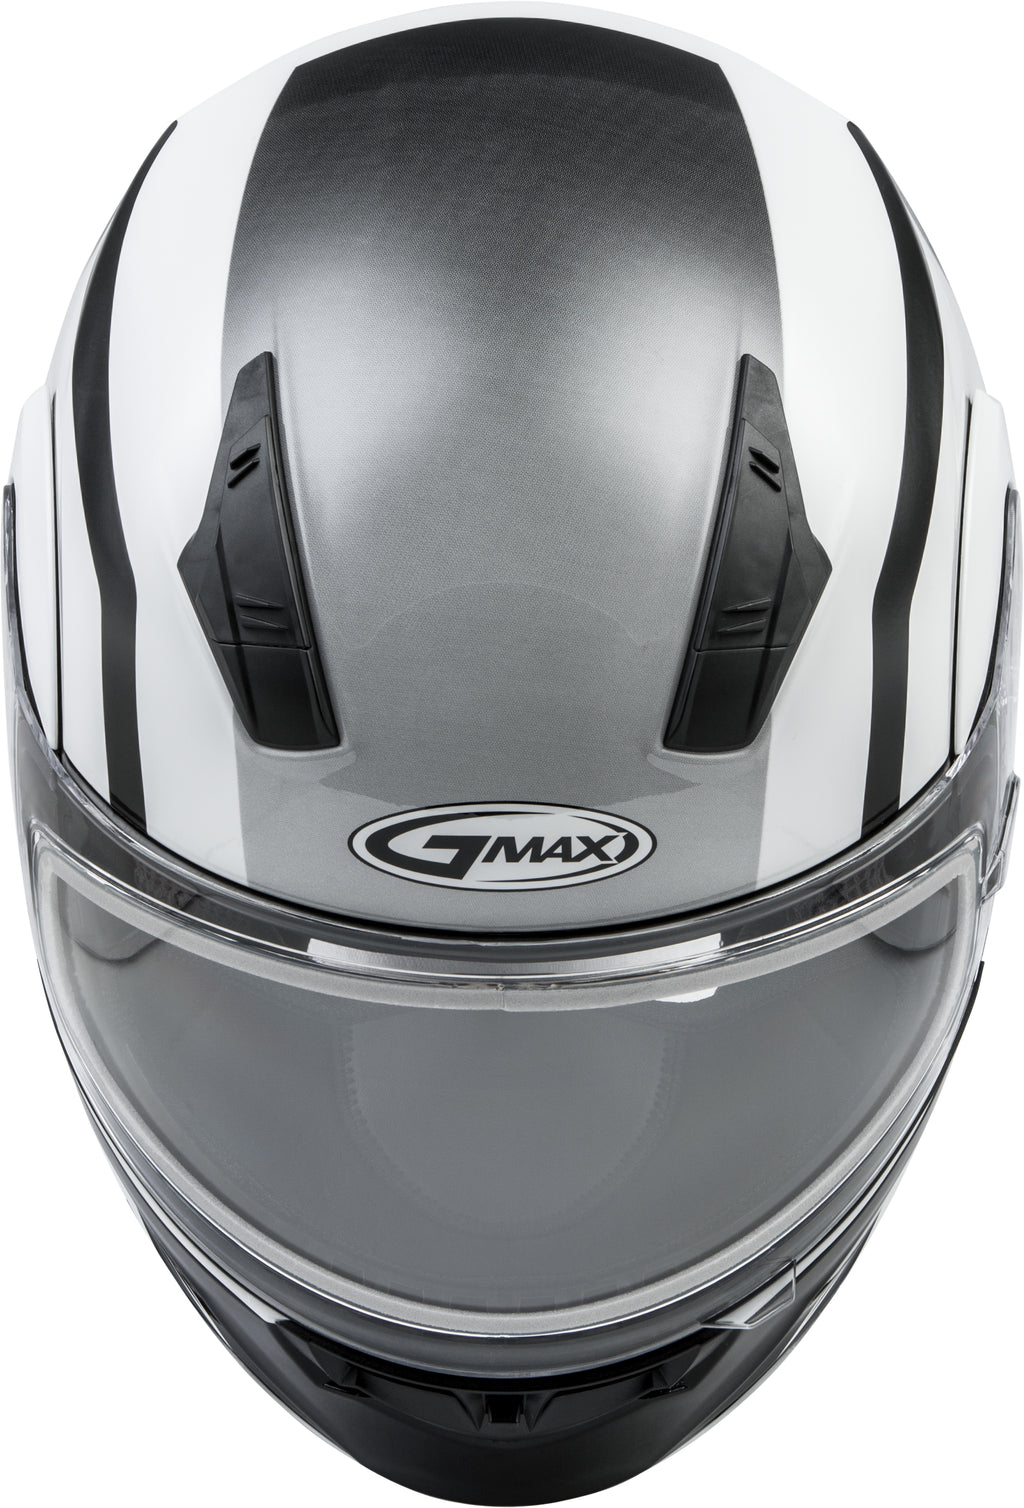 Md 04s Modular Docket Snow Helmet White/Black 2x